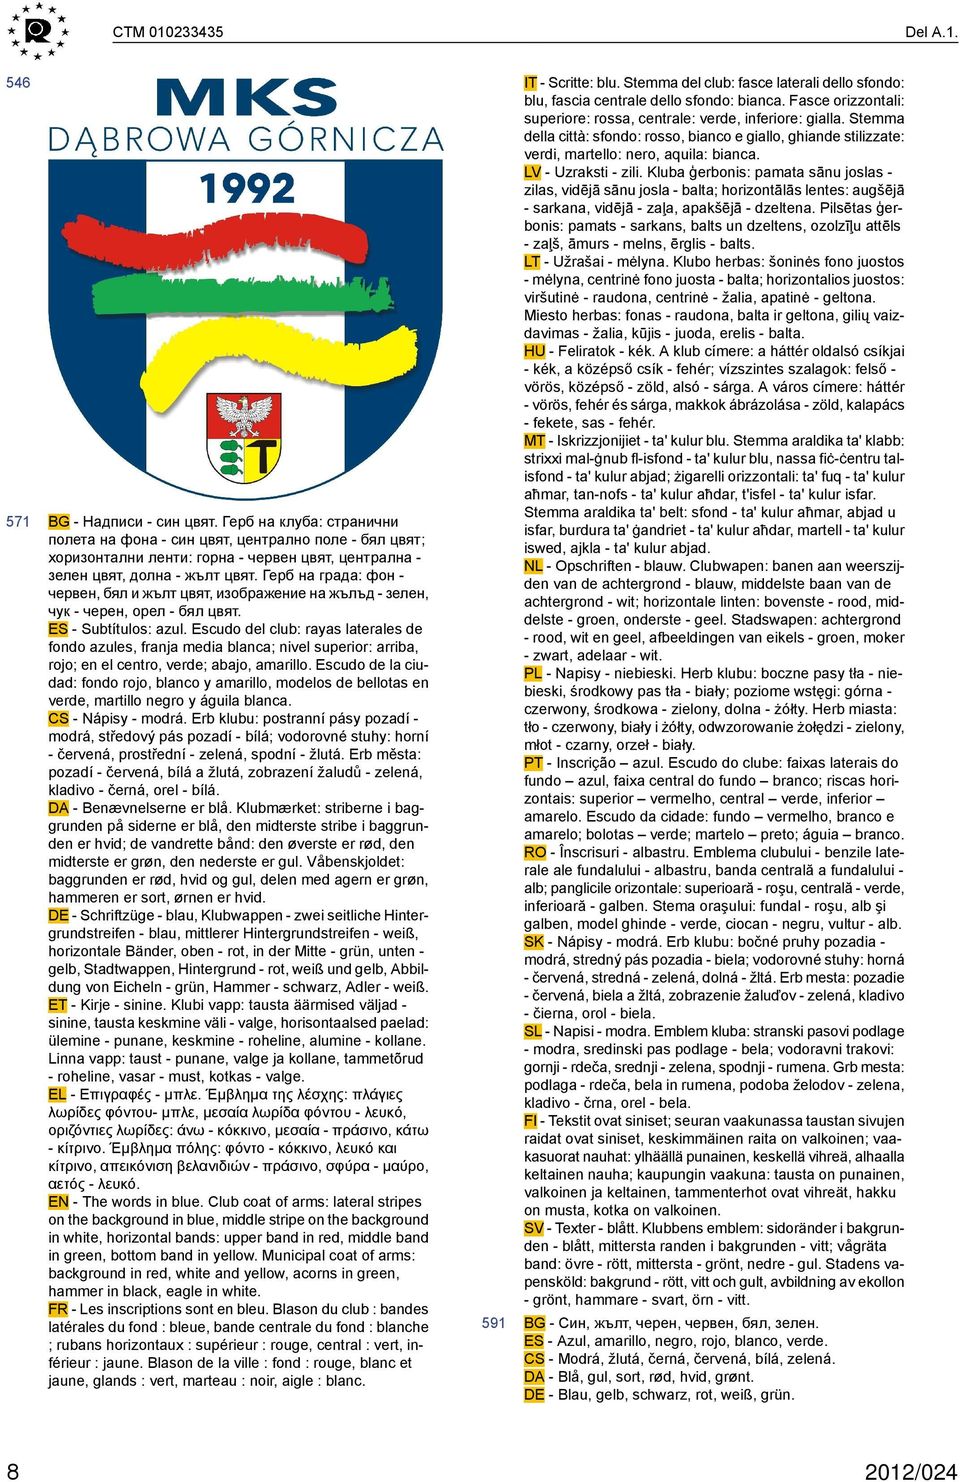 Герб на града: фон - червен, бял и жълт цвят, изображение на жълъд - зелен, чук - черен, орел - бял цвят. ES - Subtítulos: azul.